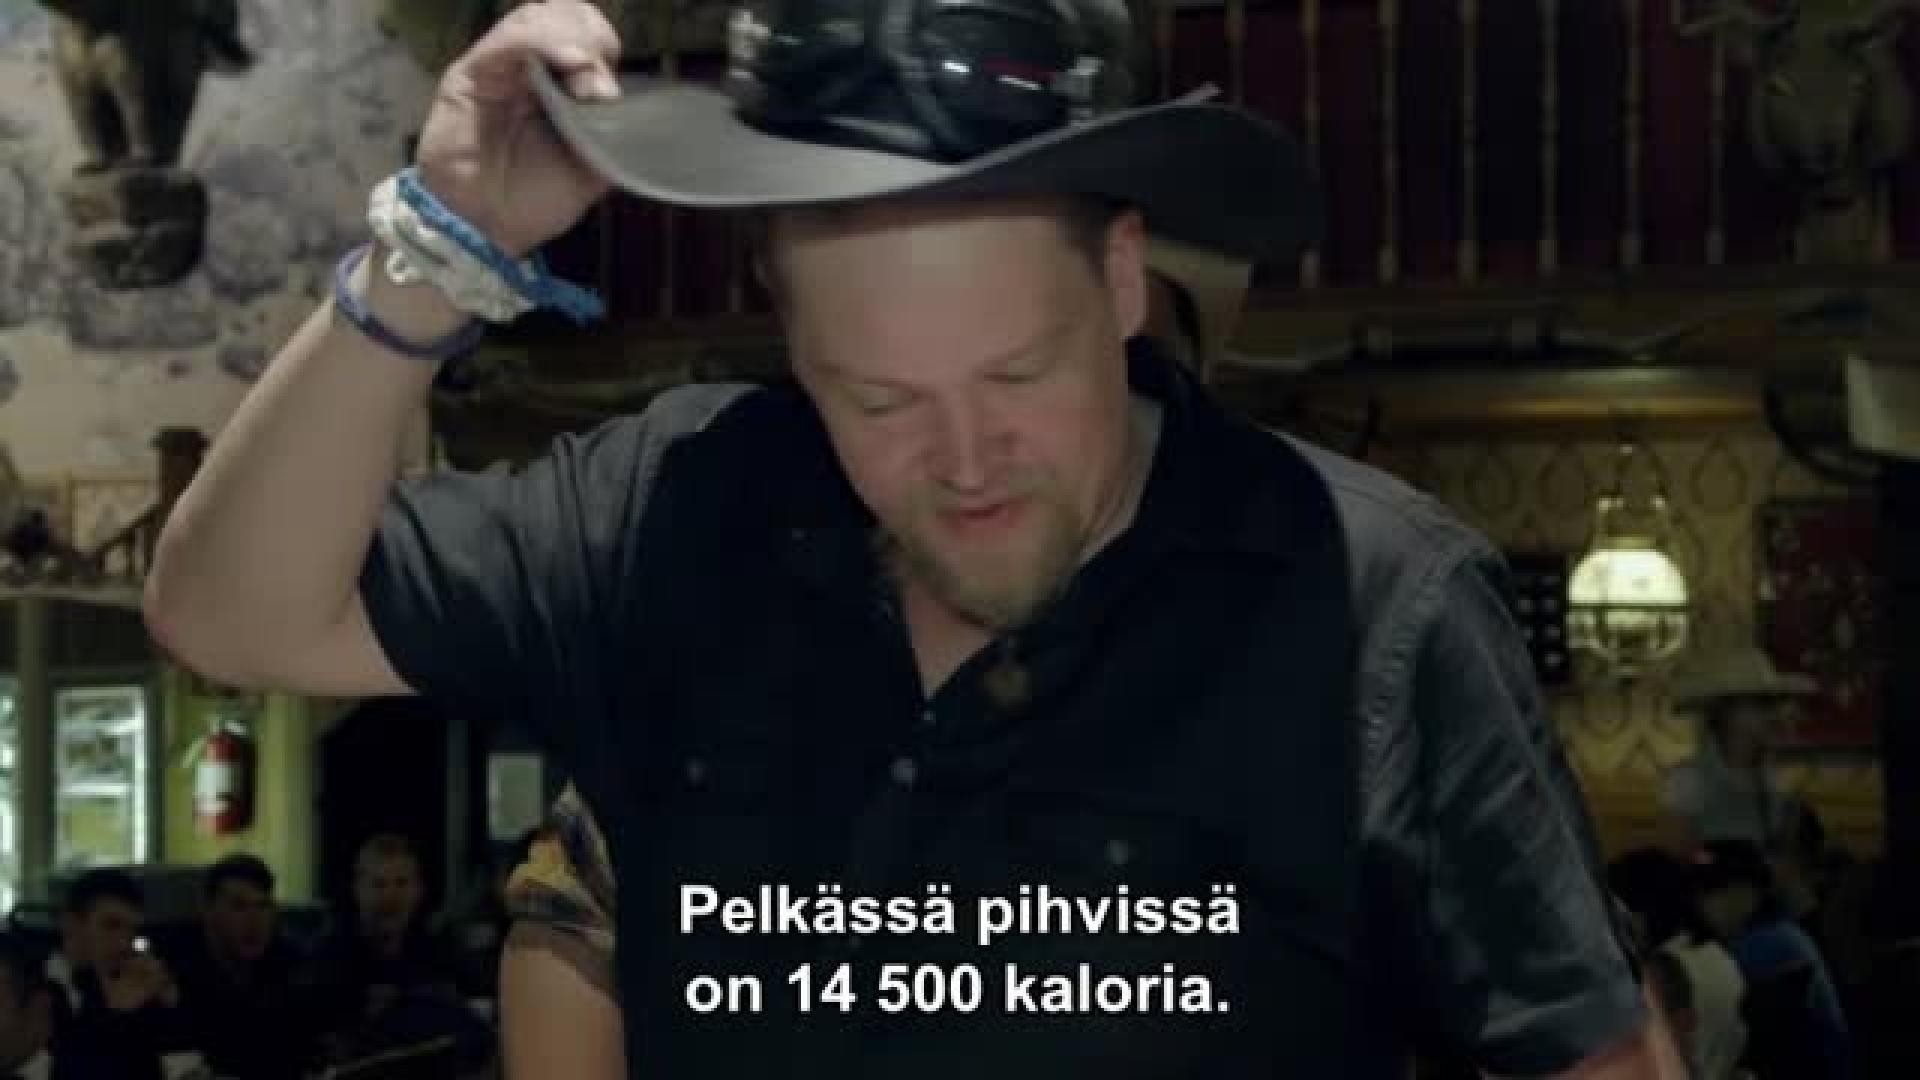 "Pelkässä pihvissä on 14 500 kaloria!" - Ville Haapasalo yrittää ahtaa itseensä kahden kilon pihviä Texasissa!